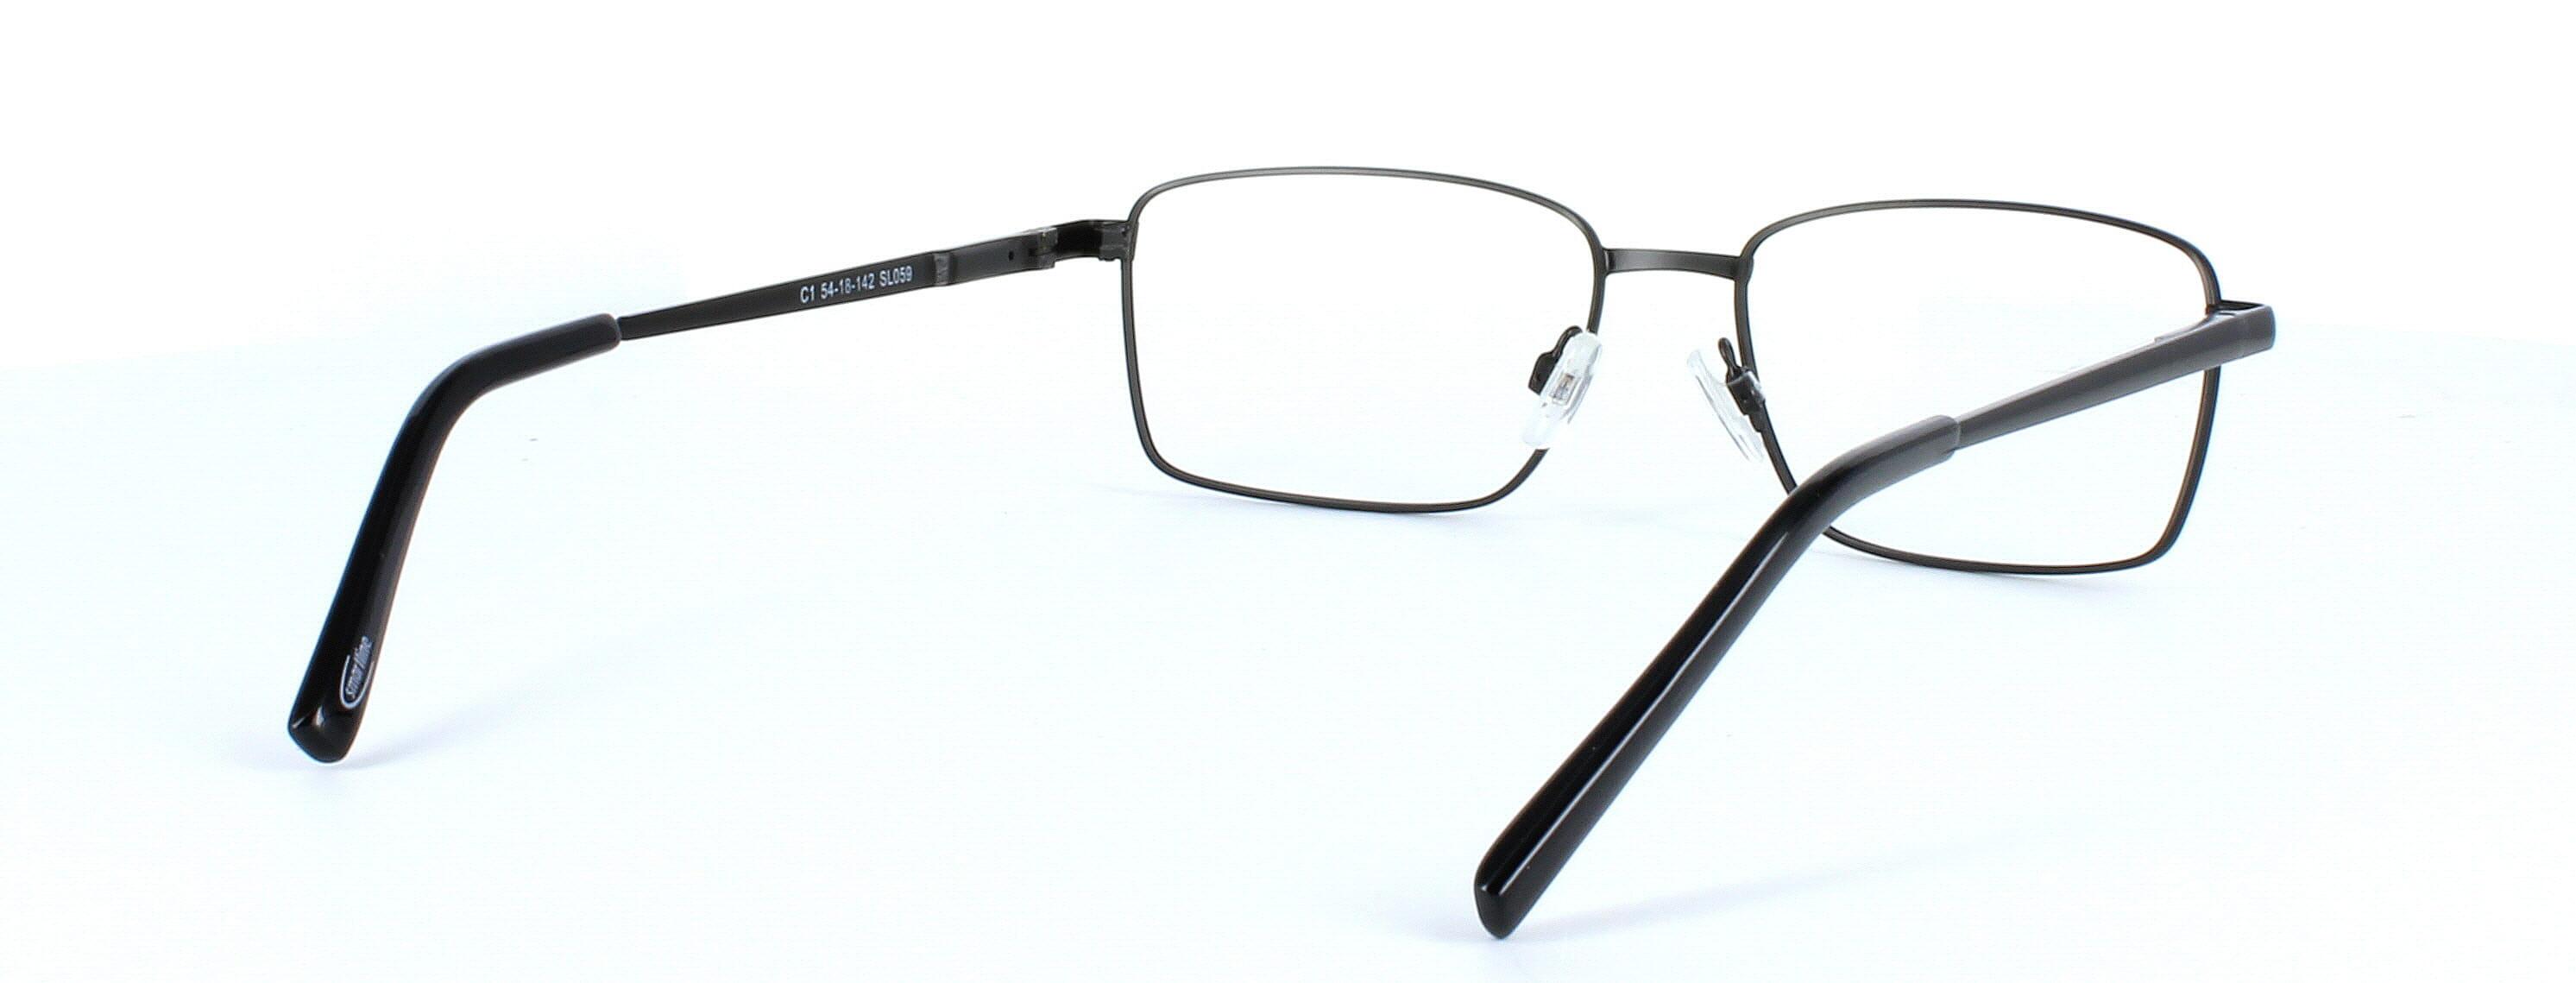 Tommy - Gent's full rim rectangular glasses frame here presented in matt black - image view 4